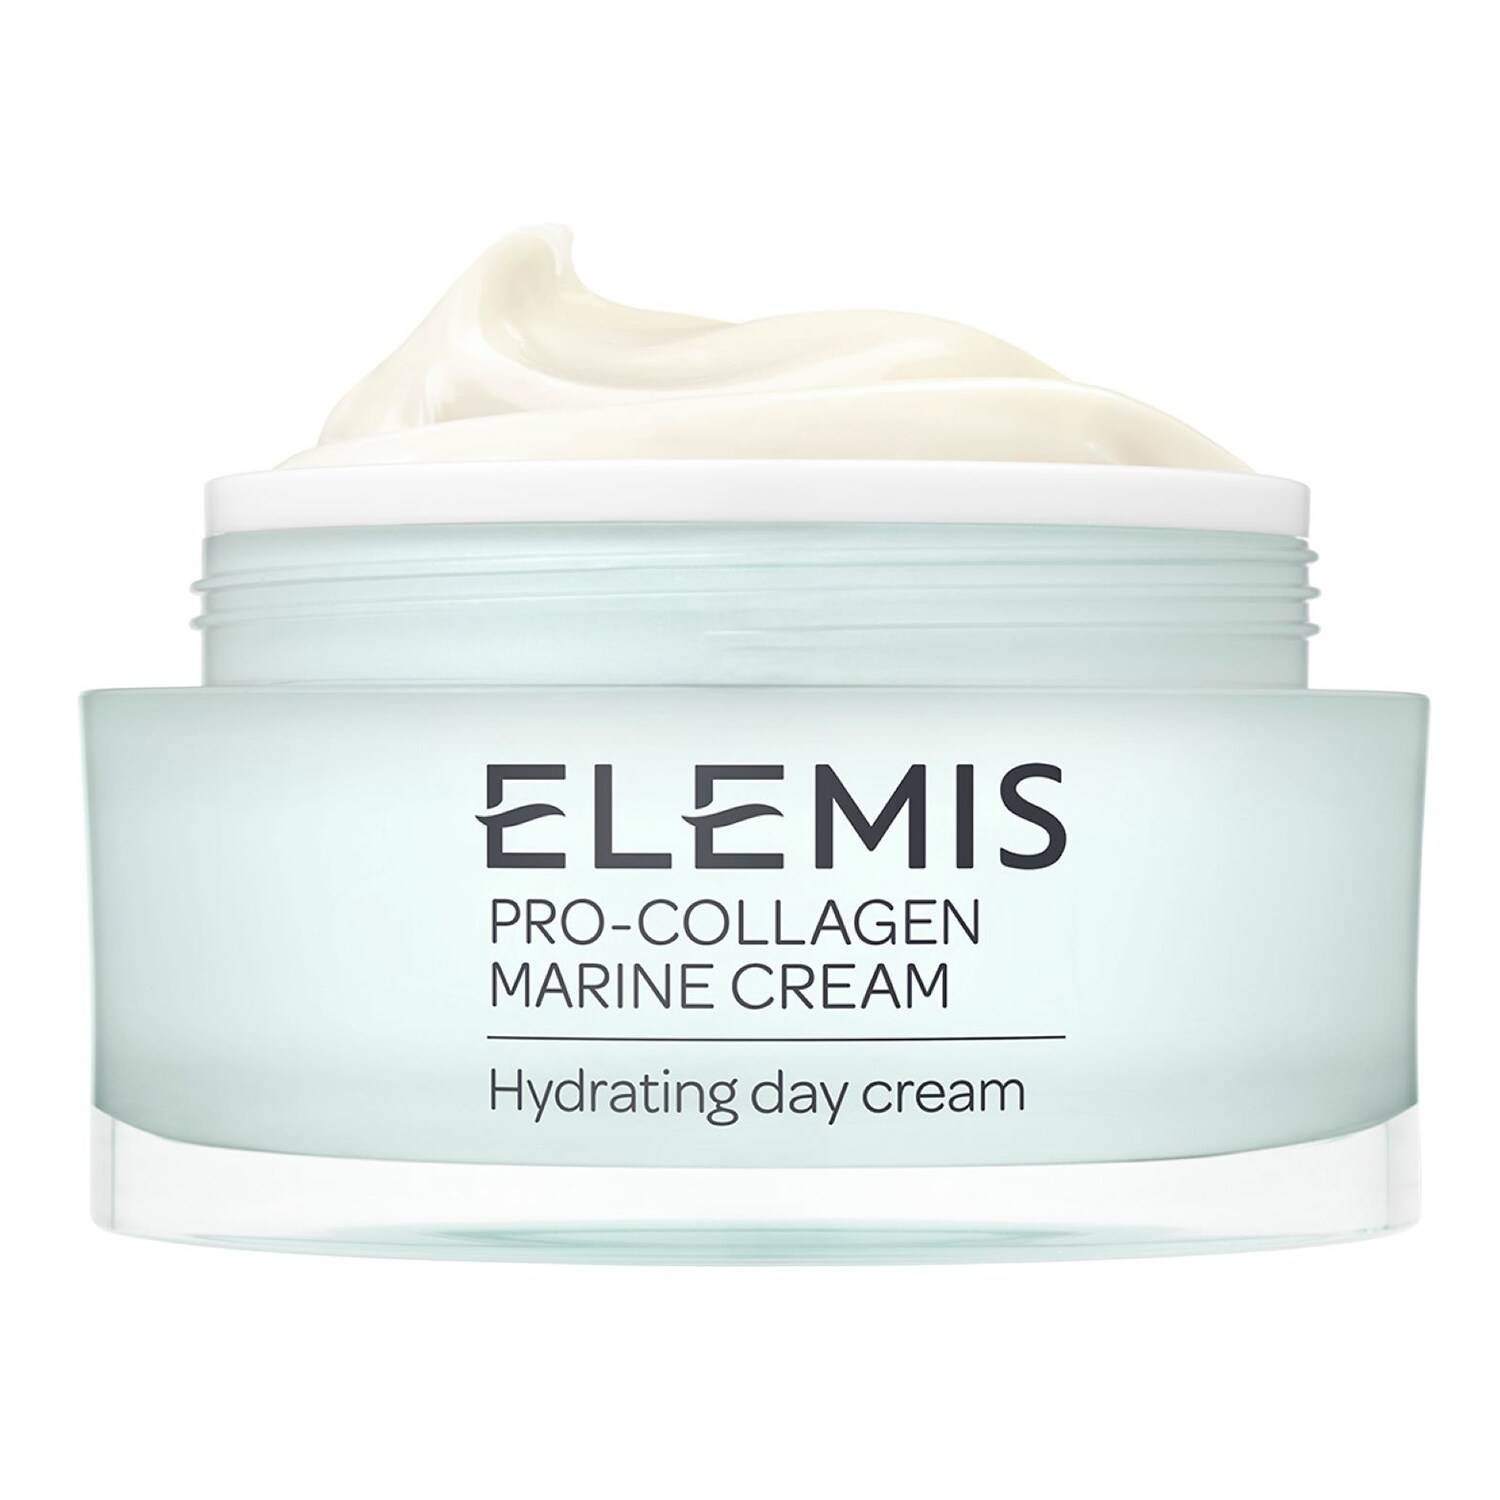 ELEMIS Limited Edition Supersize Pro-Collagen Marine Cream 100ml